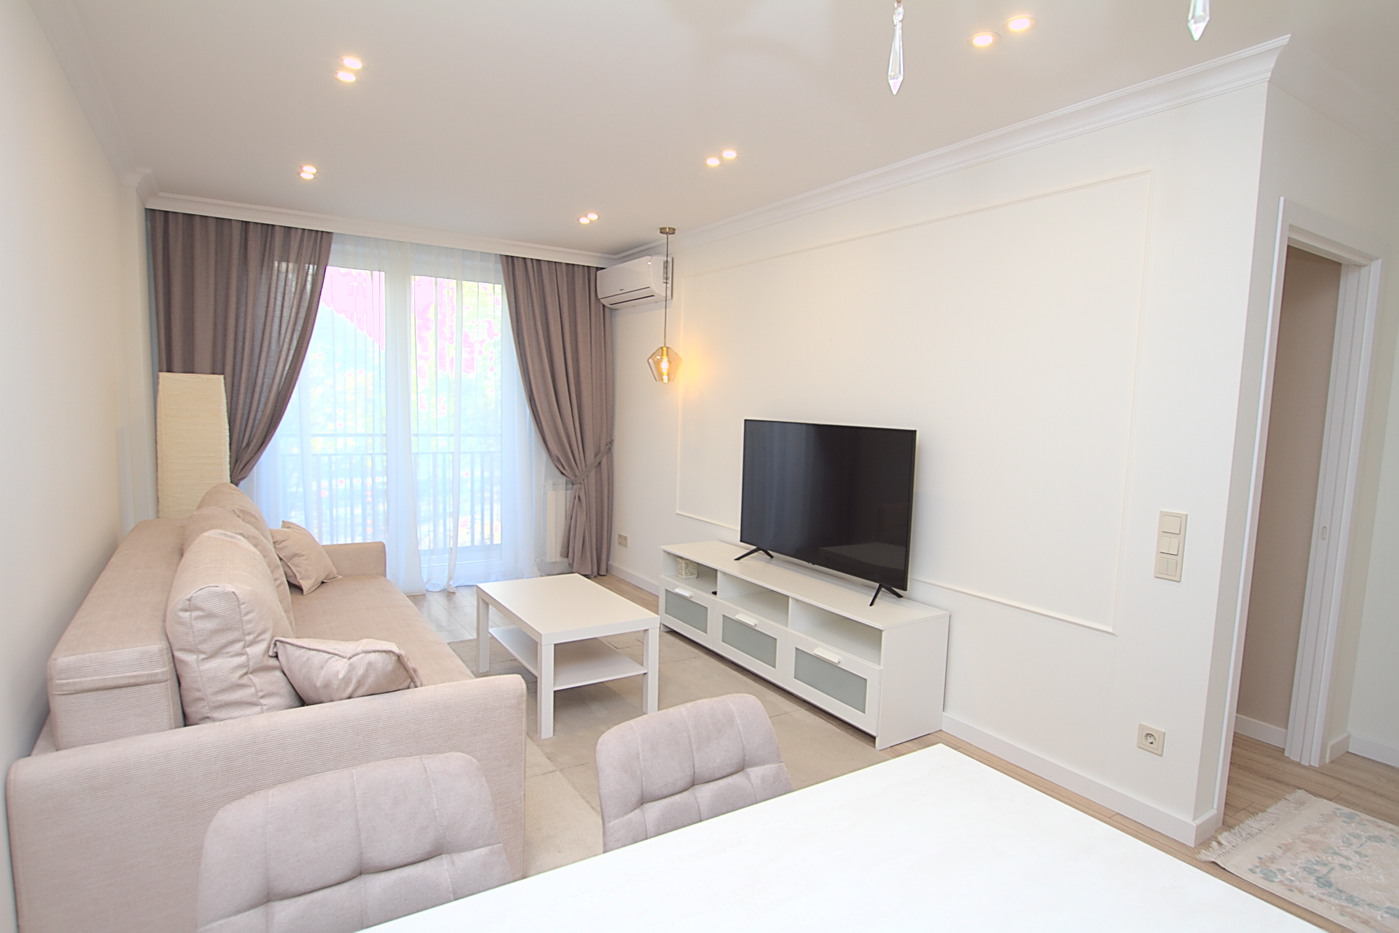 Новая резиденция в центре Кишинева: 2 комнаты, 1 спальня, 55 m²